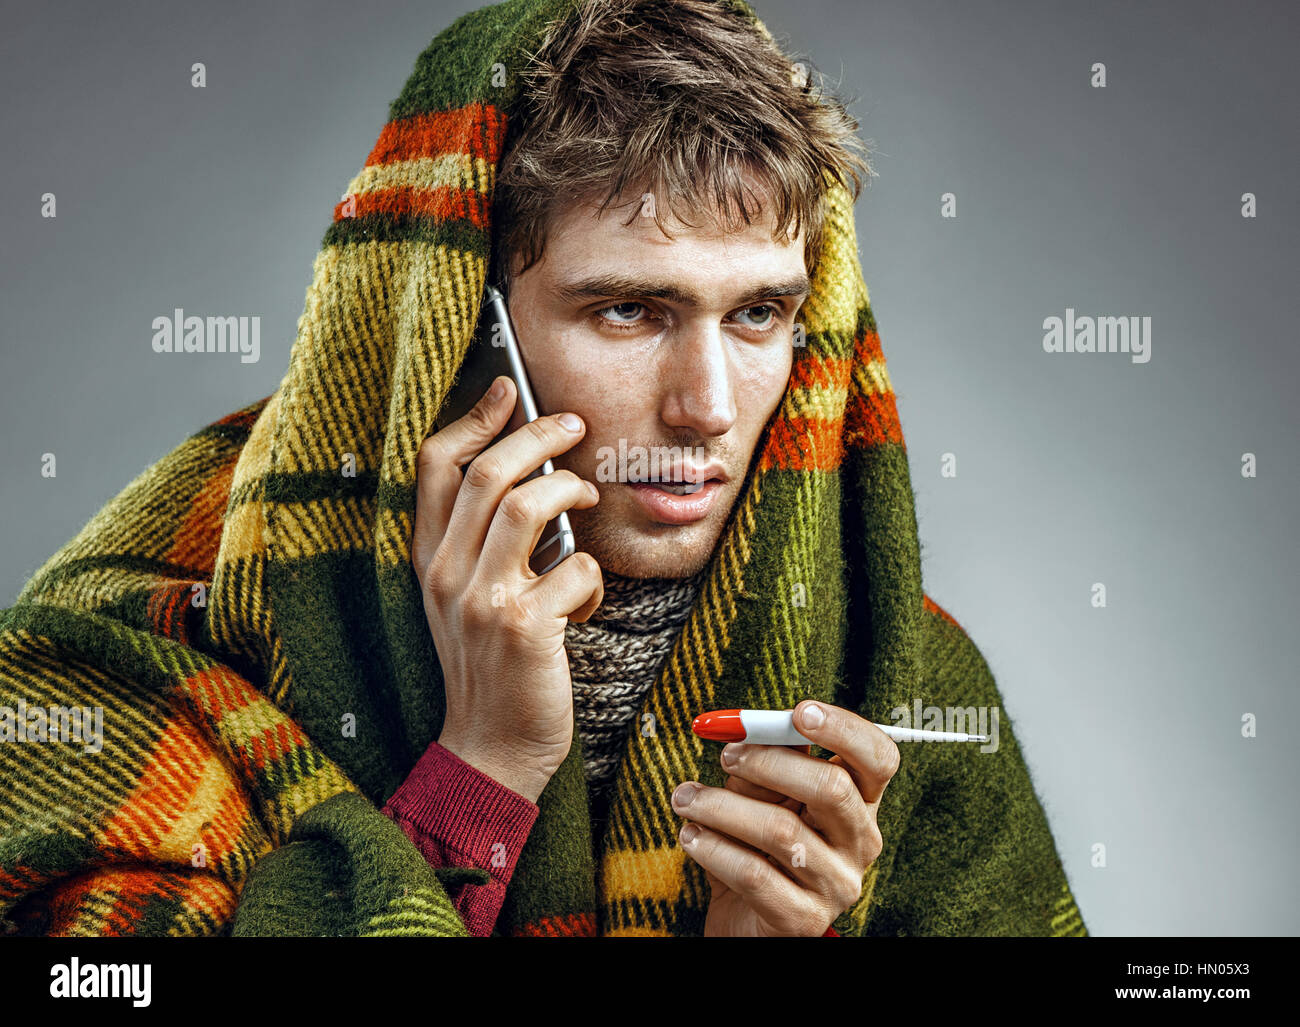 Hombre enfermo envuelto en una manta con una temperatura alta llamando al teléfono. Hombre que sufría del virus de la gripe y frío invierno. Concepto de salud Foto de stock